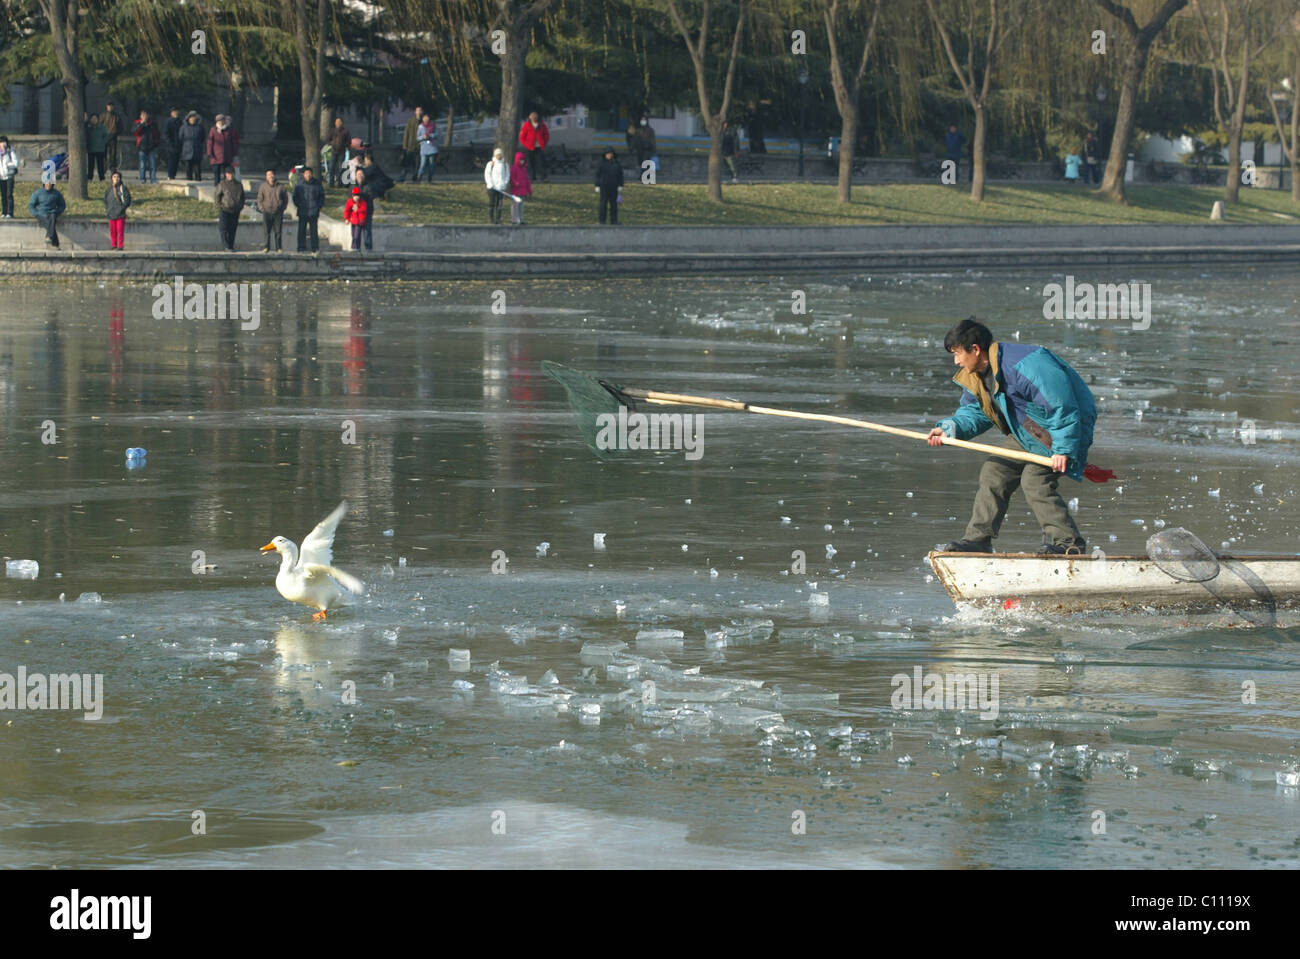 Pato rescatado del lago congelado Park trabajadores mastermind el rescate de pato afectadas de un lago congelado en Beijing, China. El Foto de stock